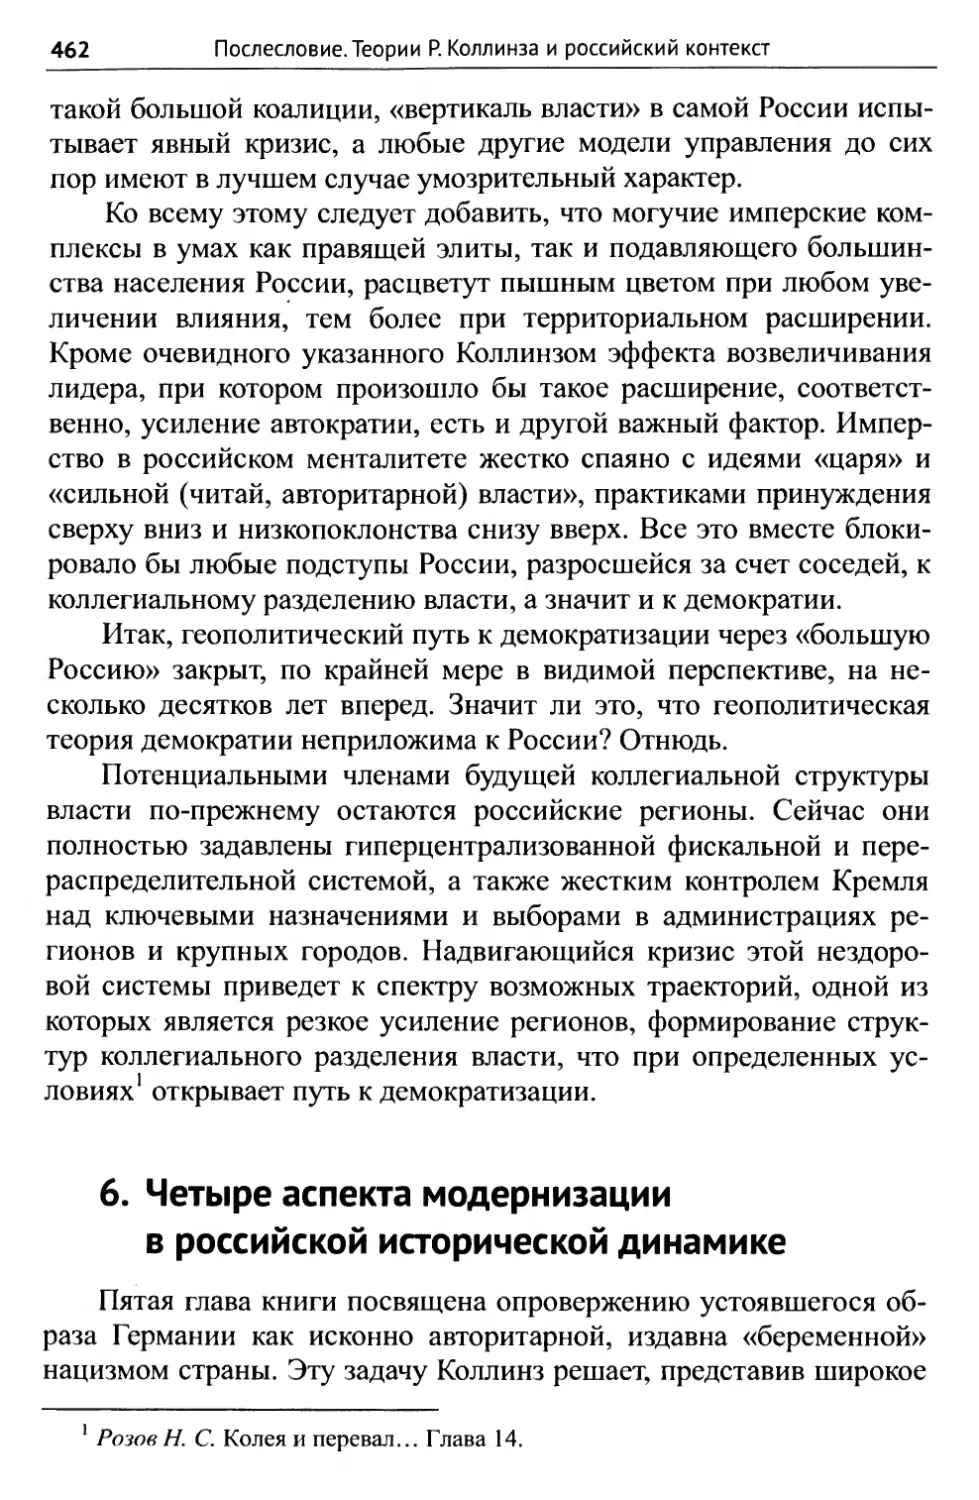 6. Четыре аспекта модернизации в российской исторической динамике